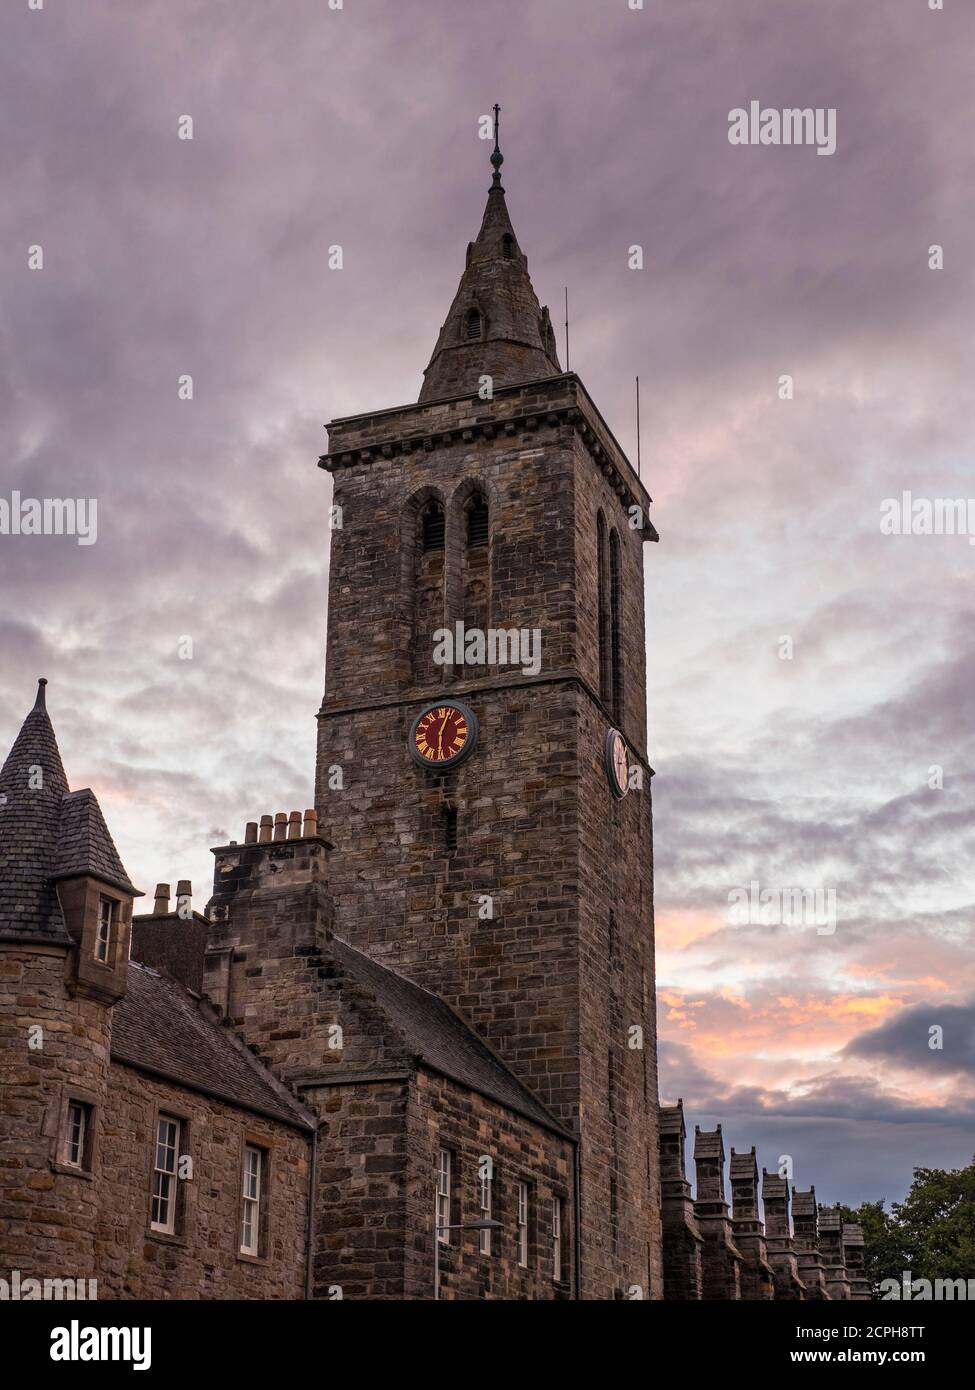 Nuit St Salvators Chapel Spire, St Salvators Chapel, Université de St Andrews, St Andrews, Fife, Écosse, Royaume-Uni, GB. Banque D'Images